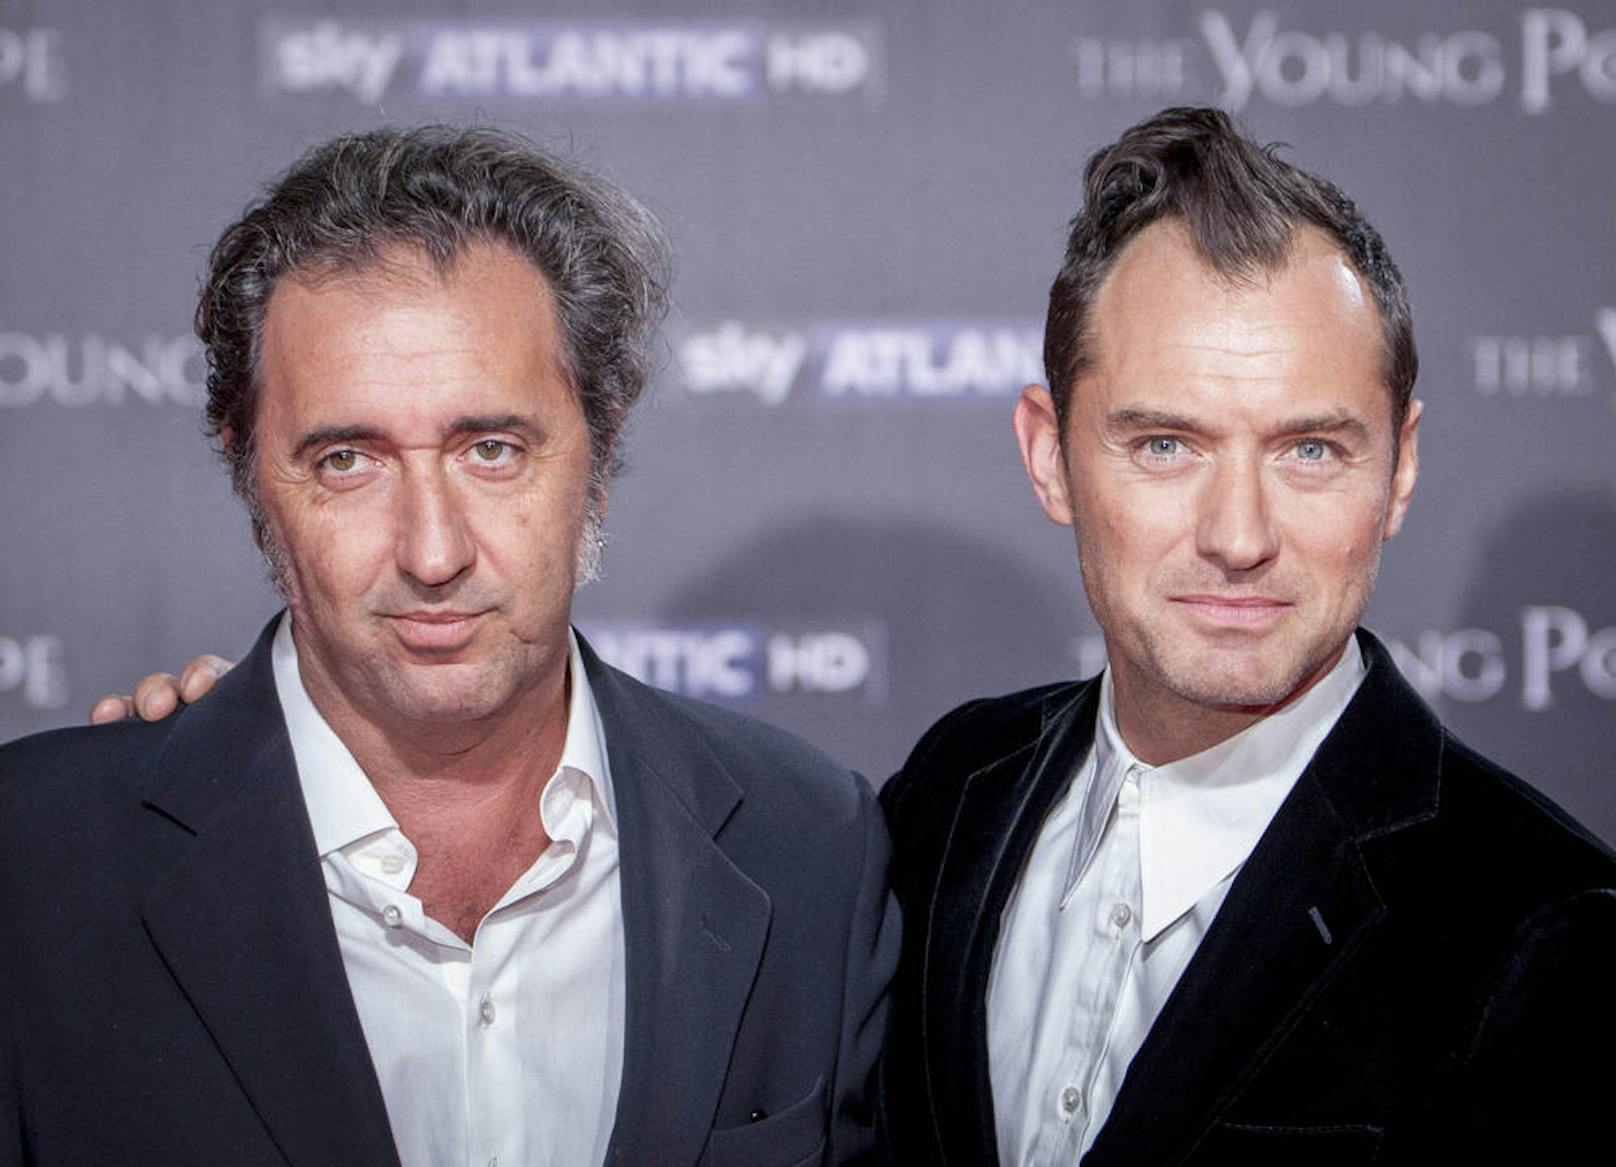 Regisseur Paolo Sorrentino und Jude Law bei der Premiere von "The Young Pope" am 9. Oktober 2016 in Rom.